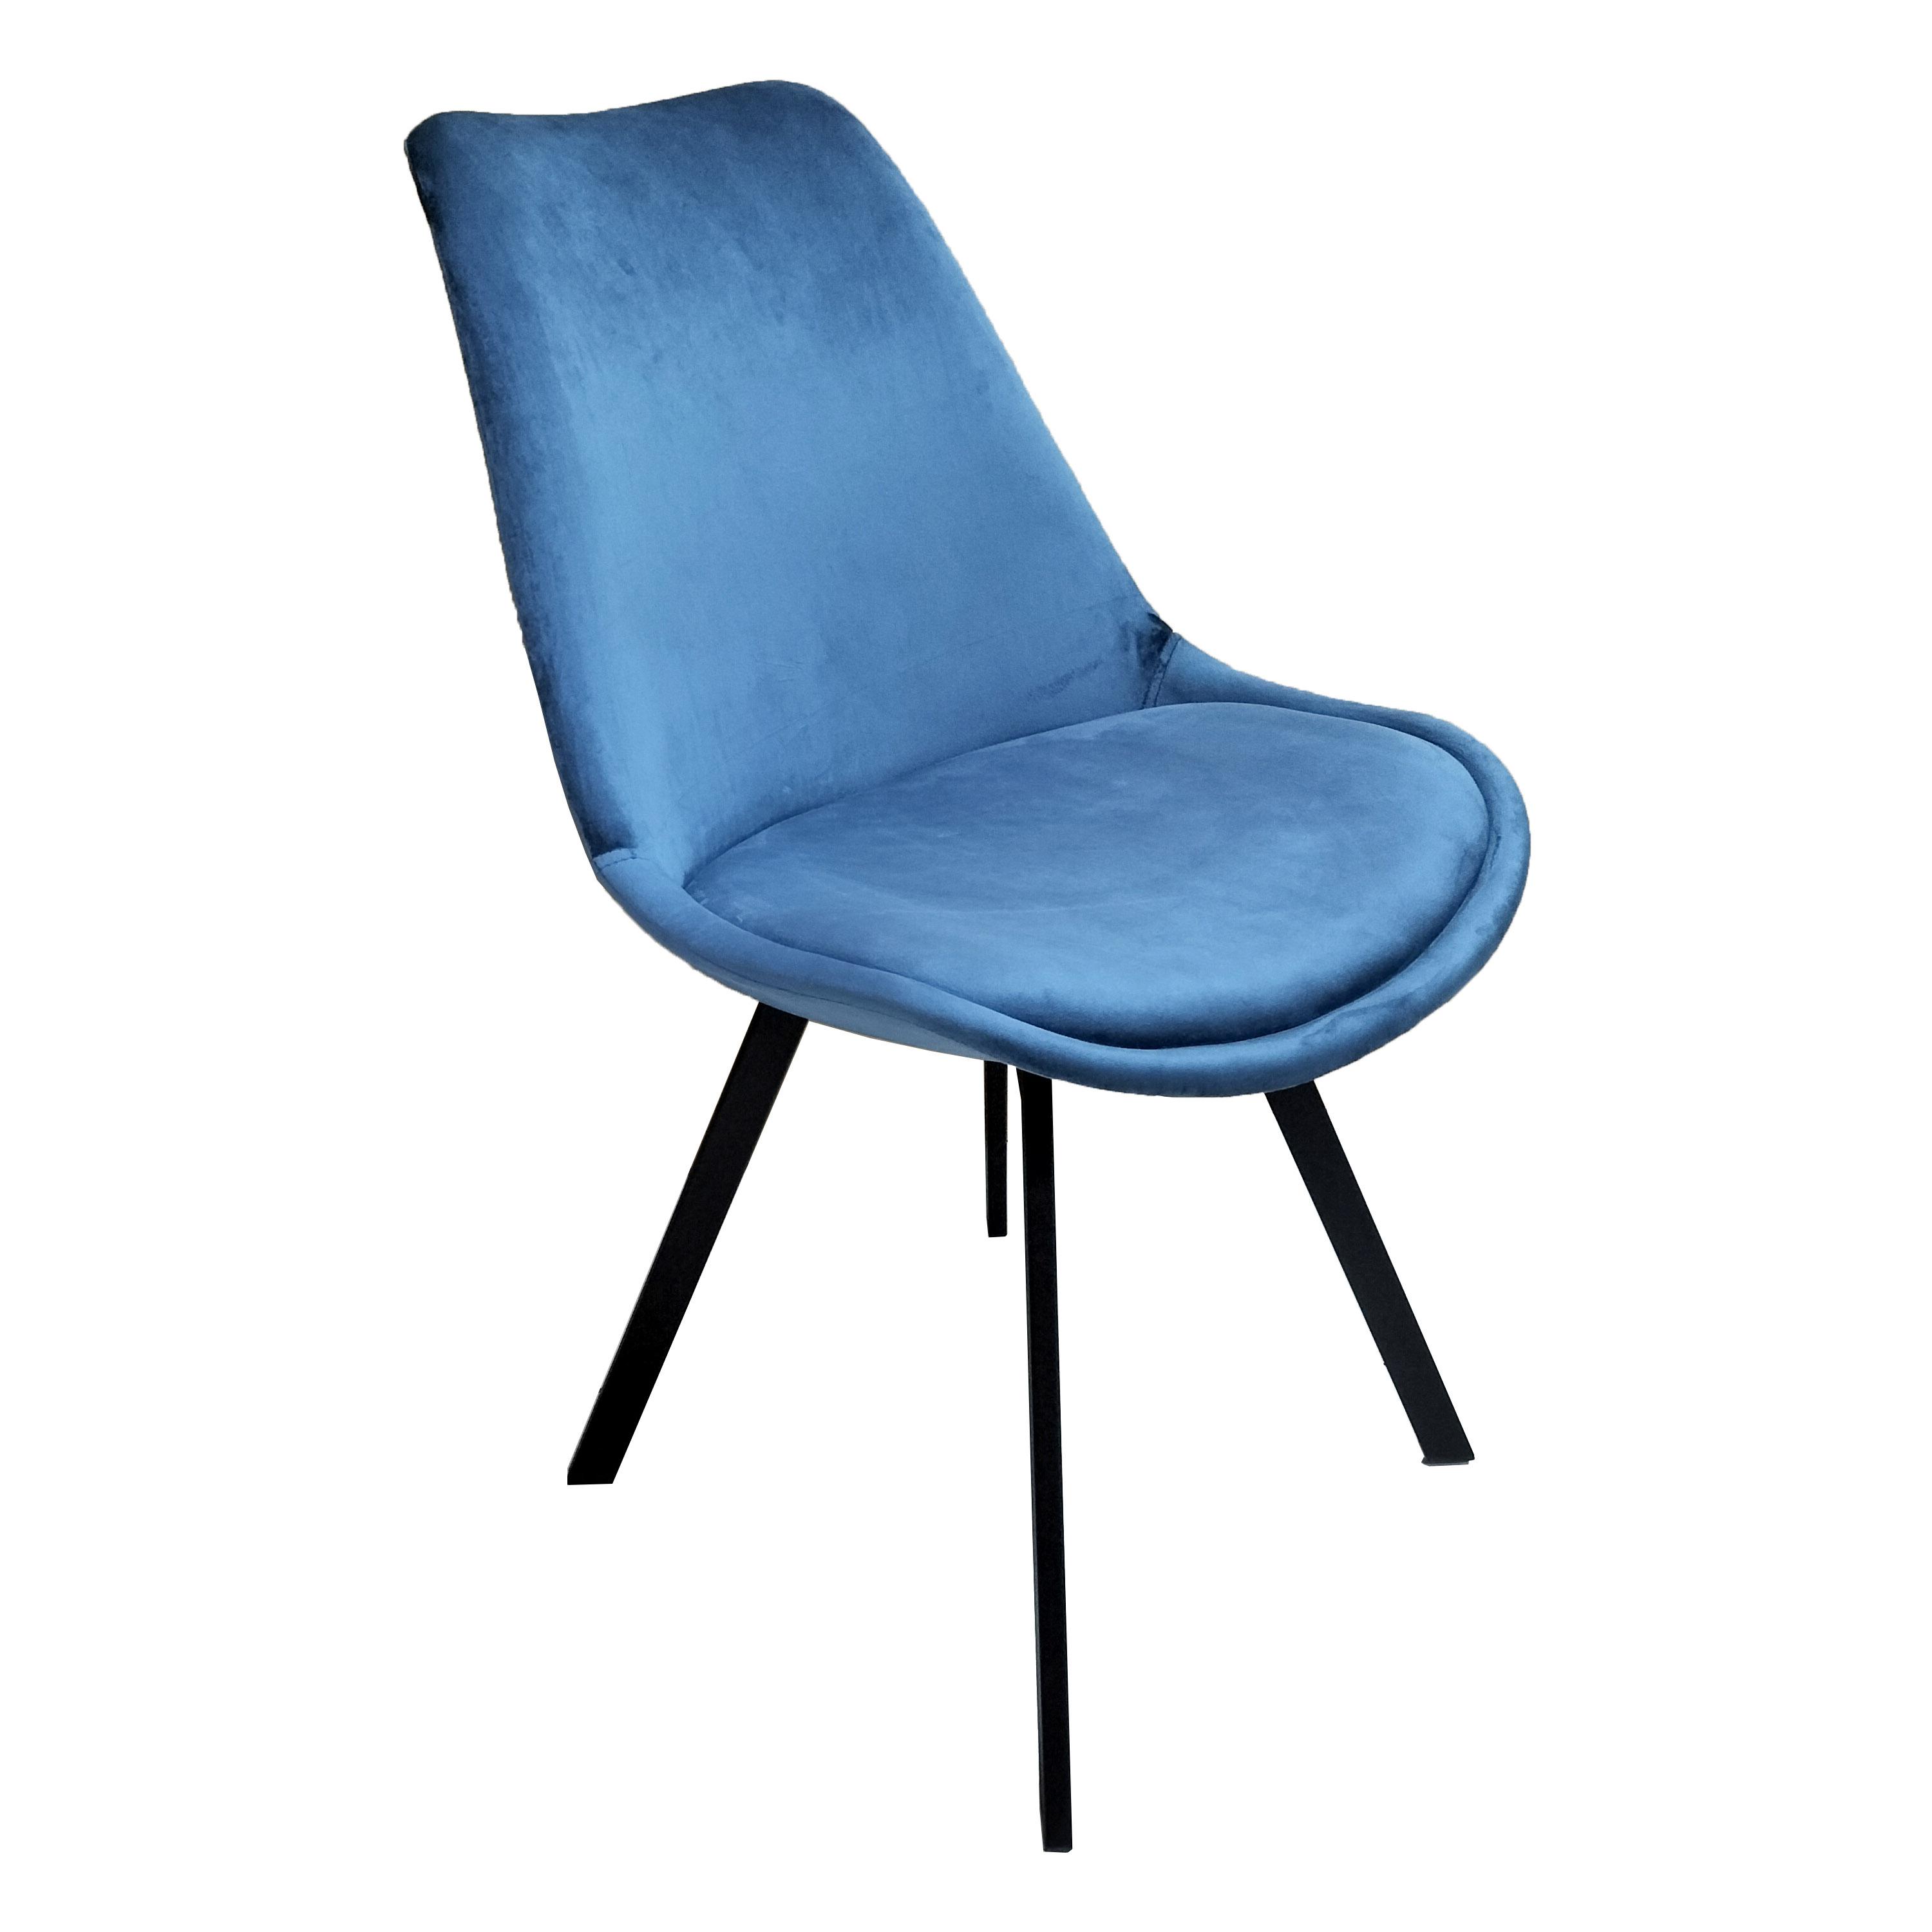 Židle Ze Sametu Mia - Modrá - modrá/černá, Moderní, kov/textil (45/84/55cm) - P & B